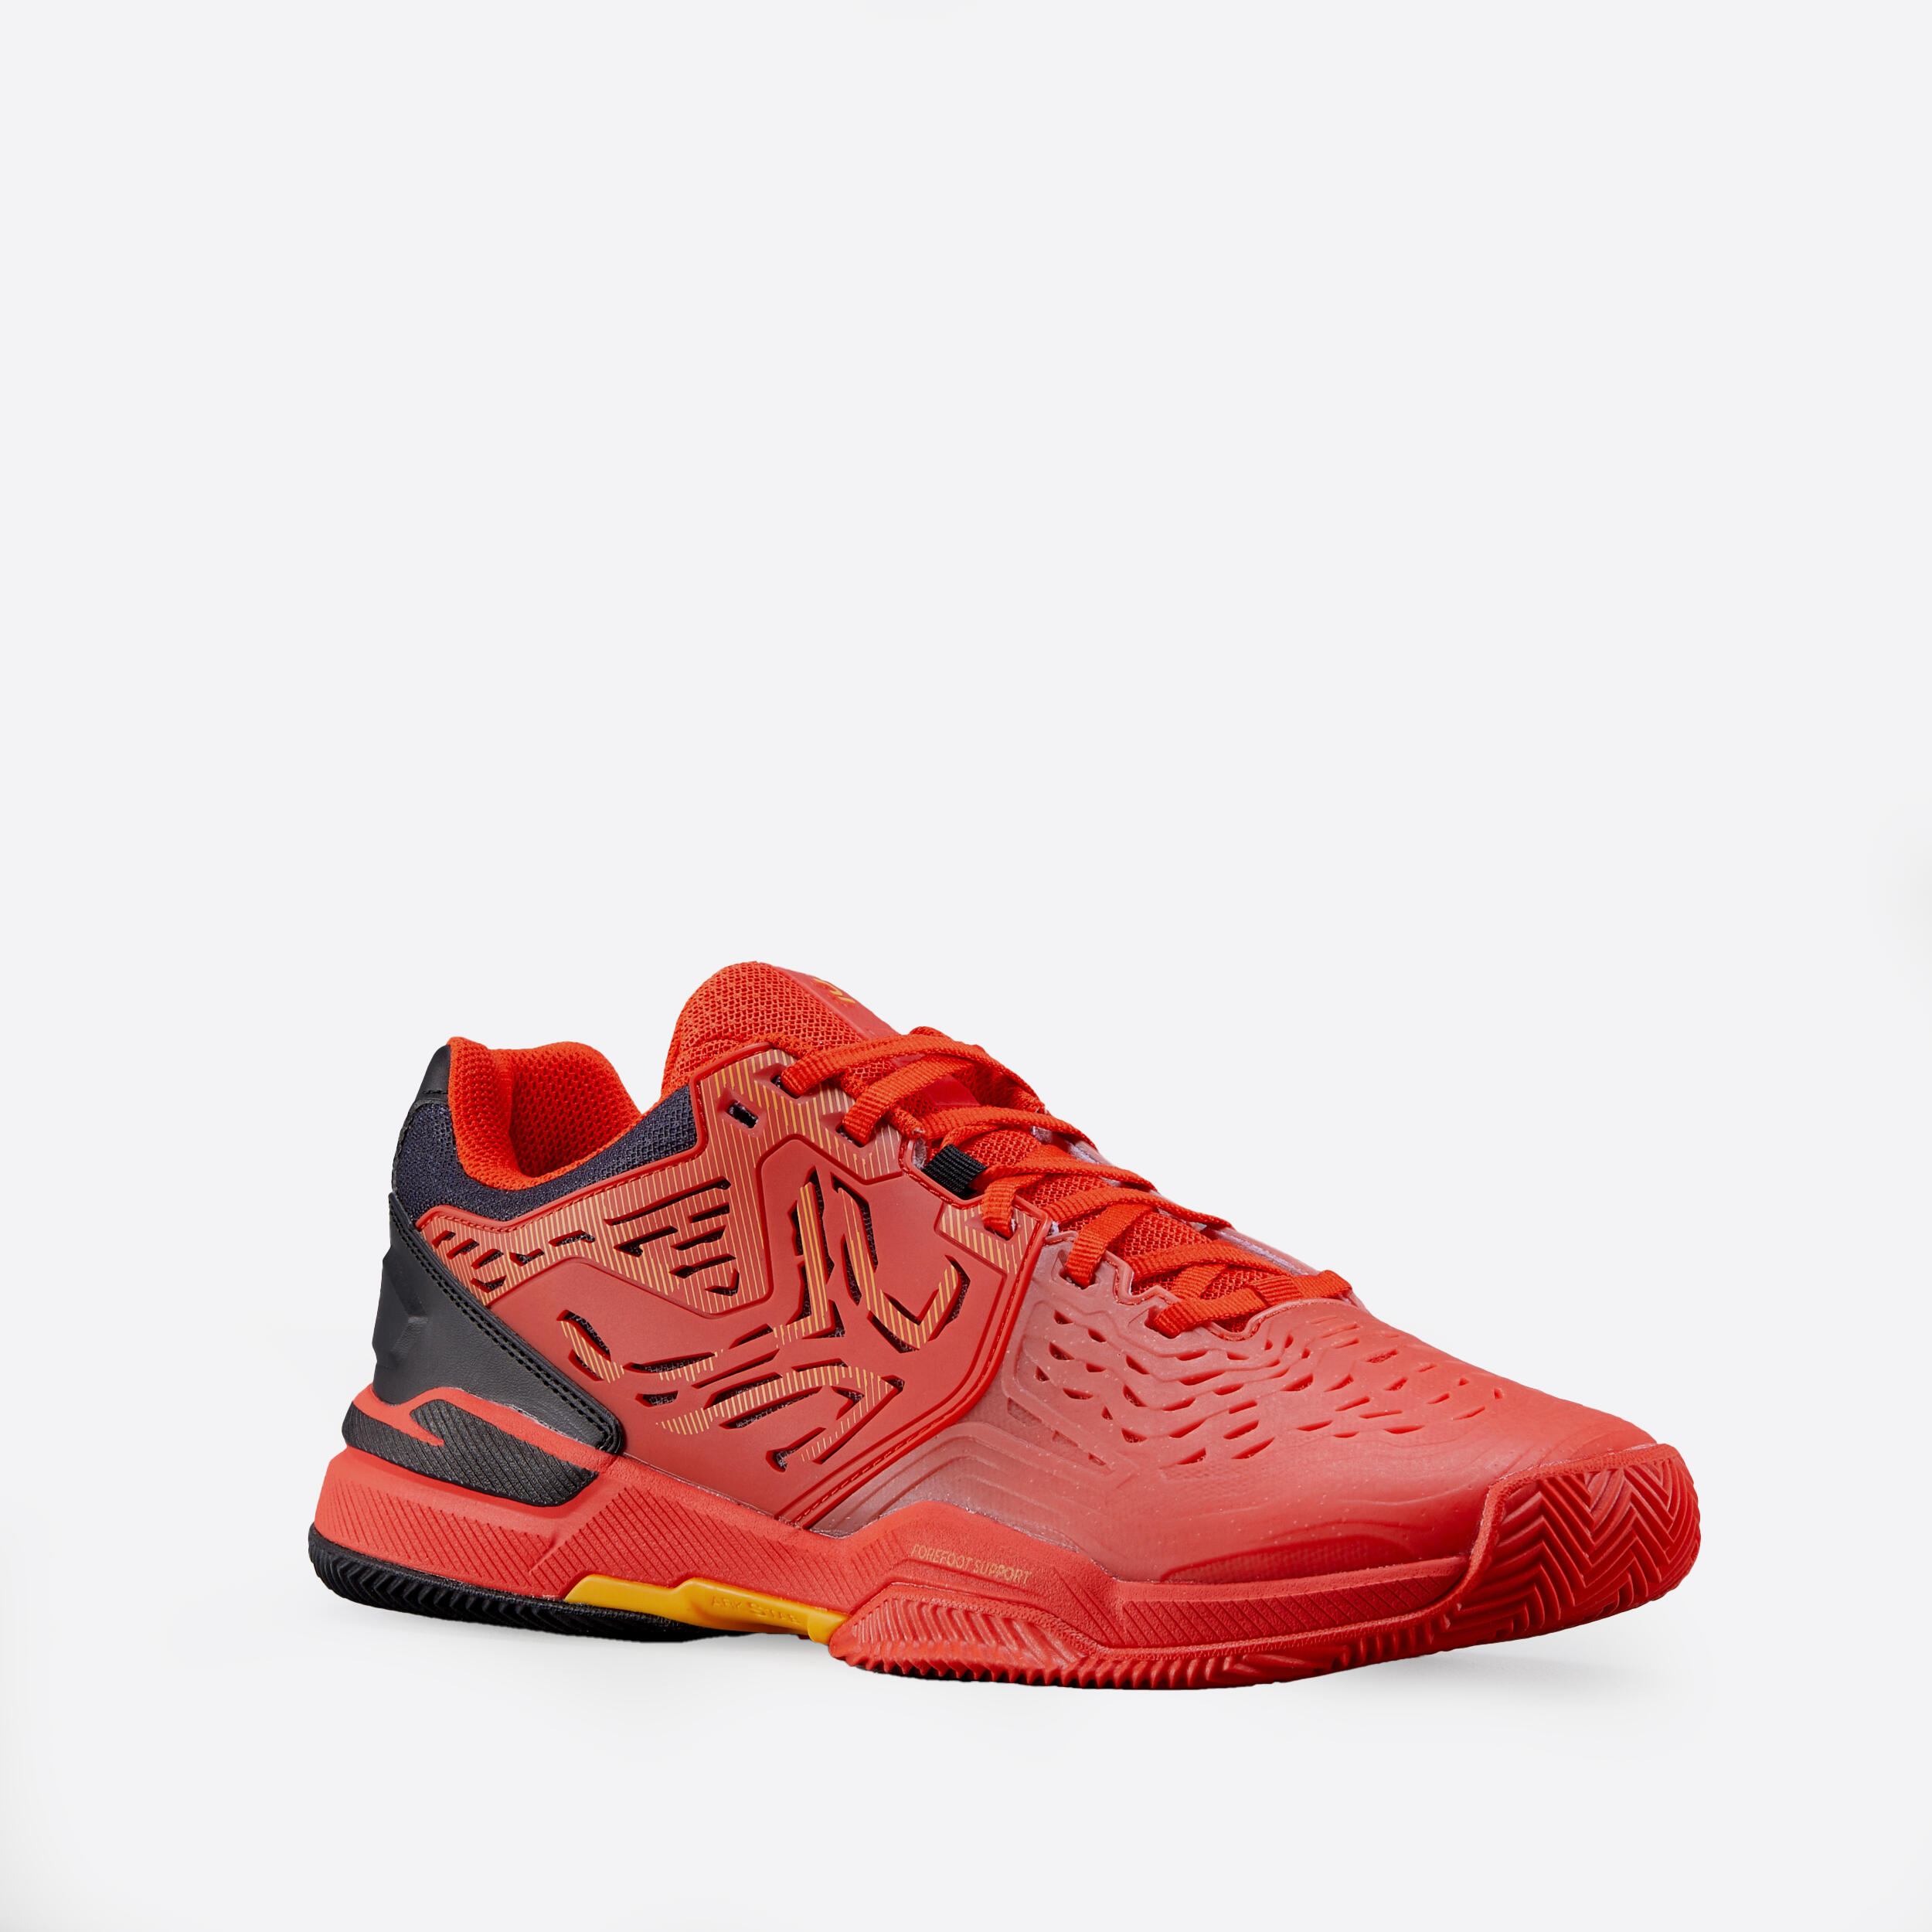 Men's Clay Court Tennis Shoes TS560 - Orange 1/4